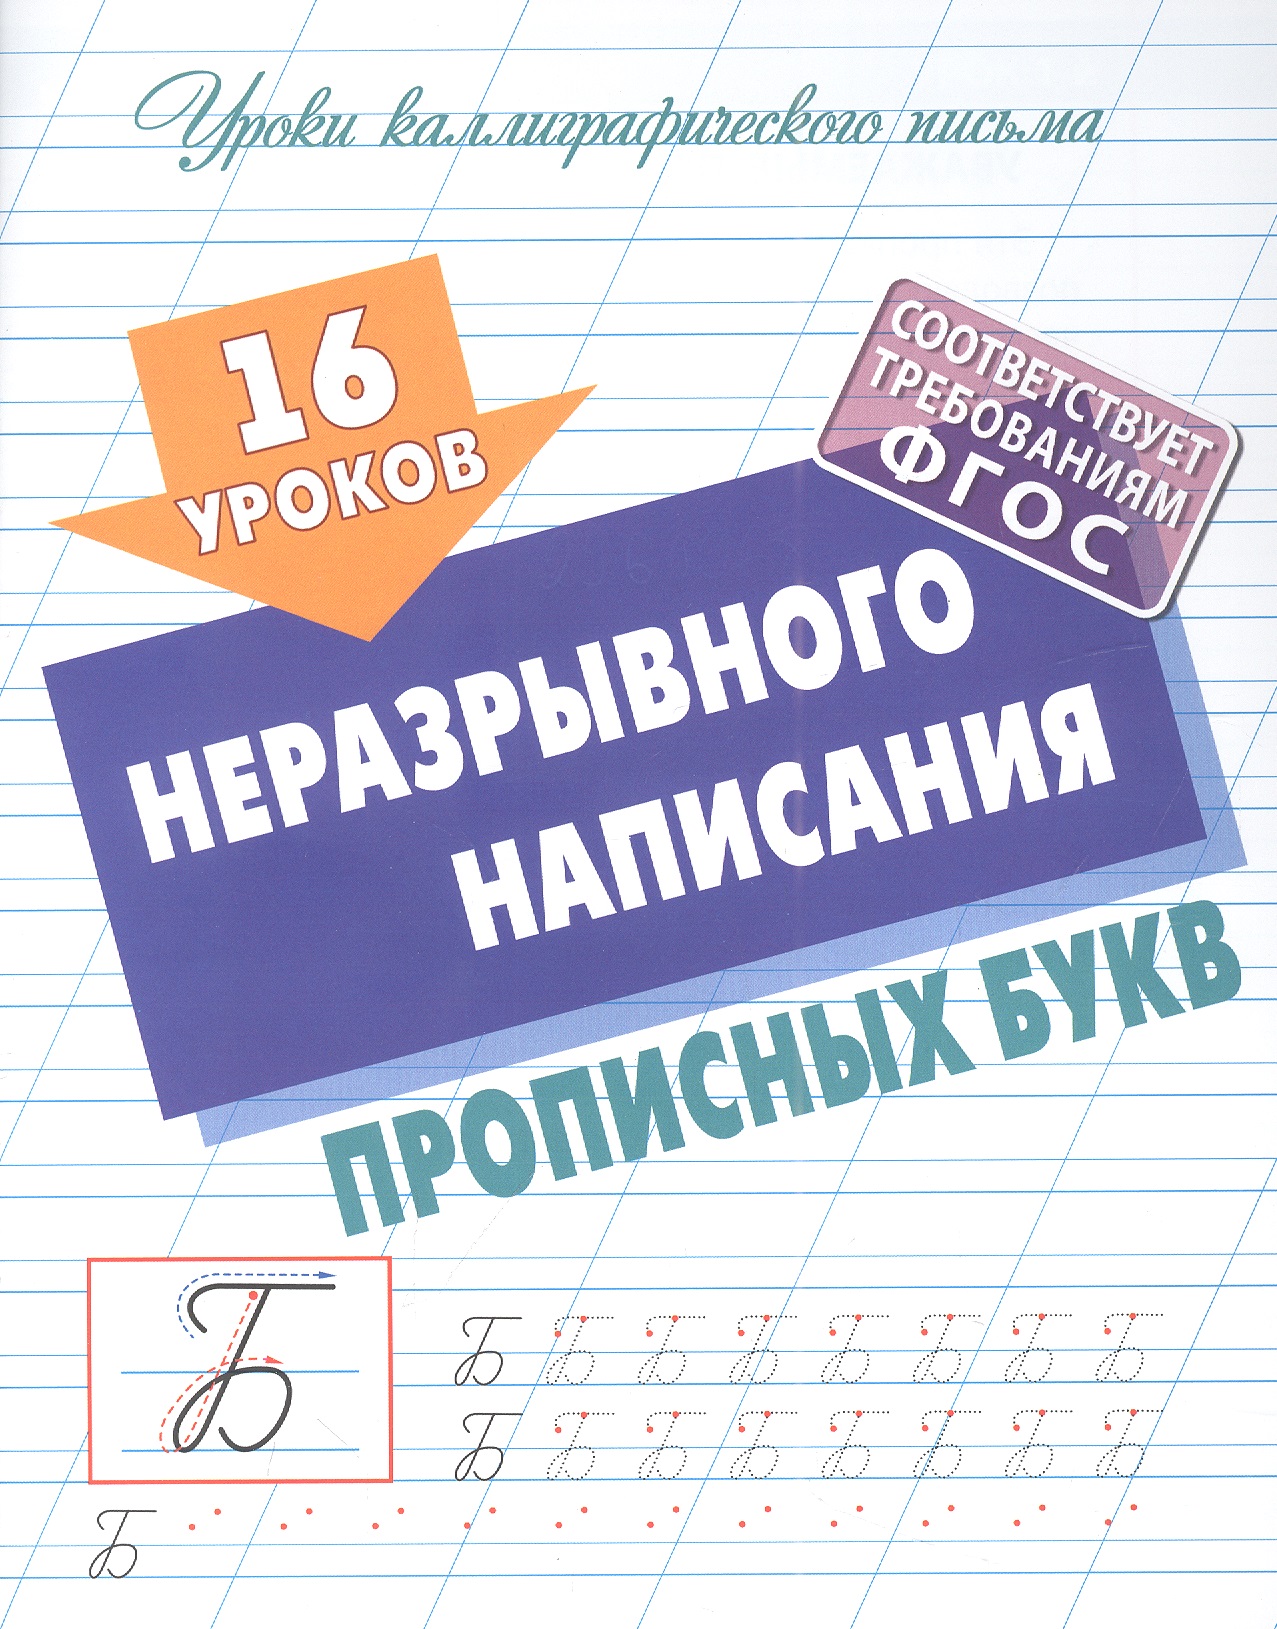 Петренко Станислав Викторович 16 уроков неразрывного написания прописных букв